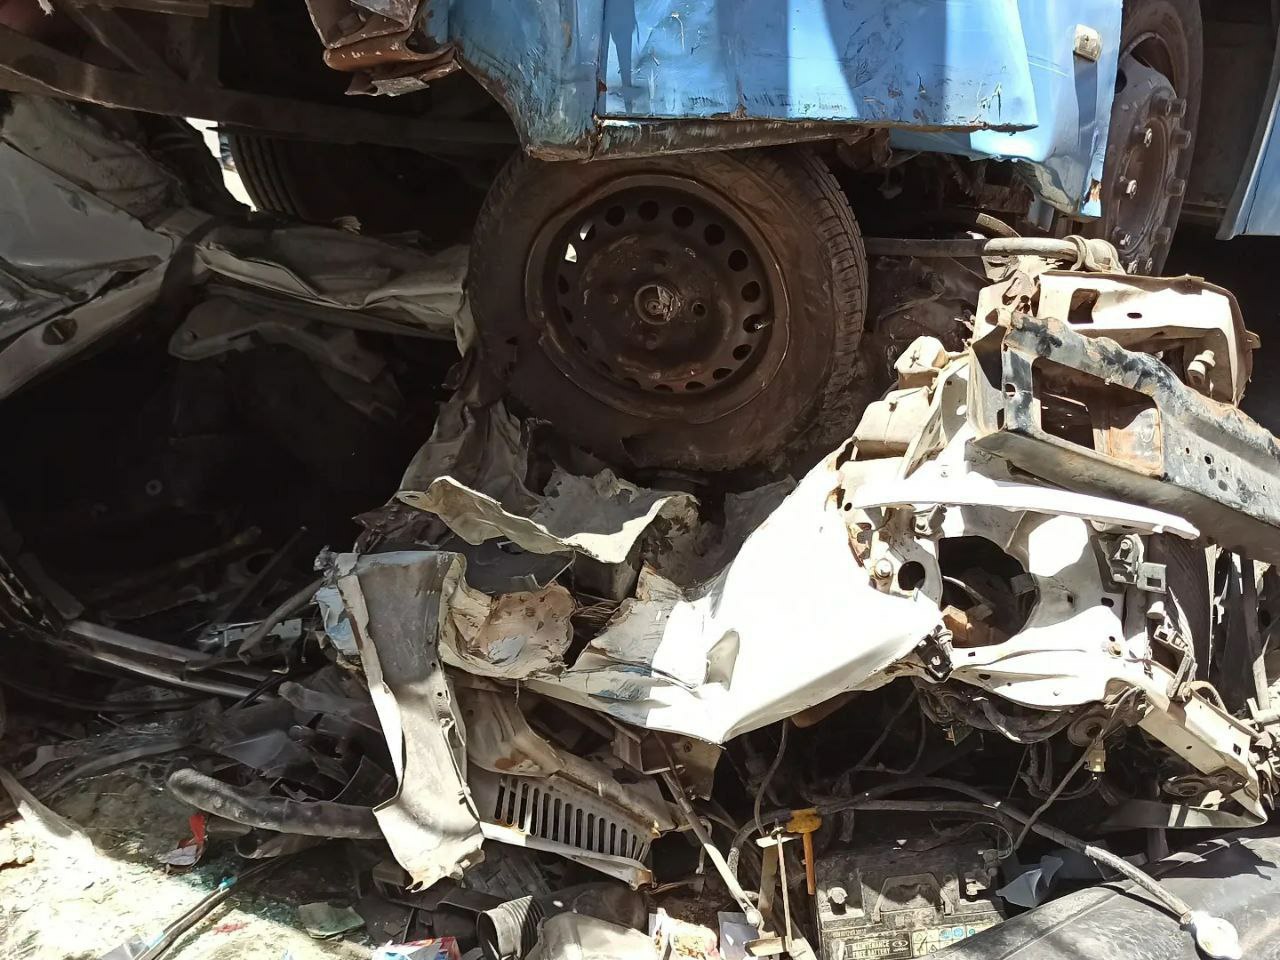 تصادف هولناک یک اتوبوس با چند خودرو در تبریز